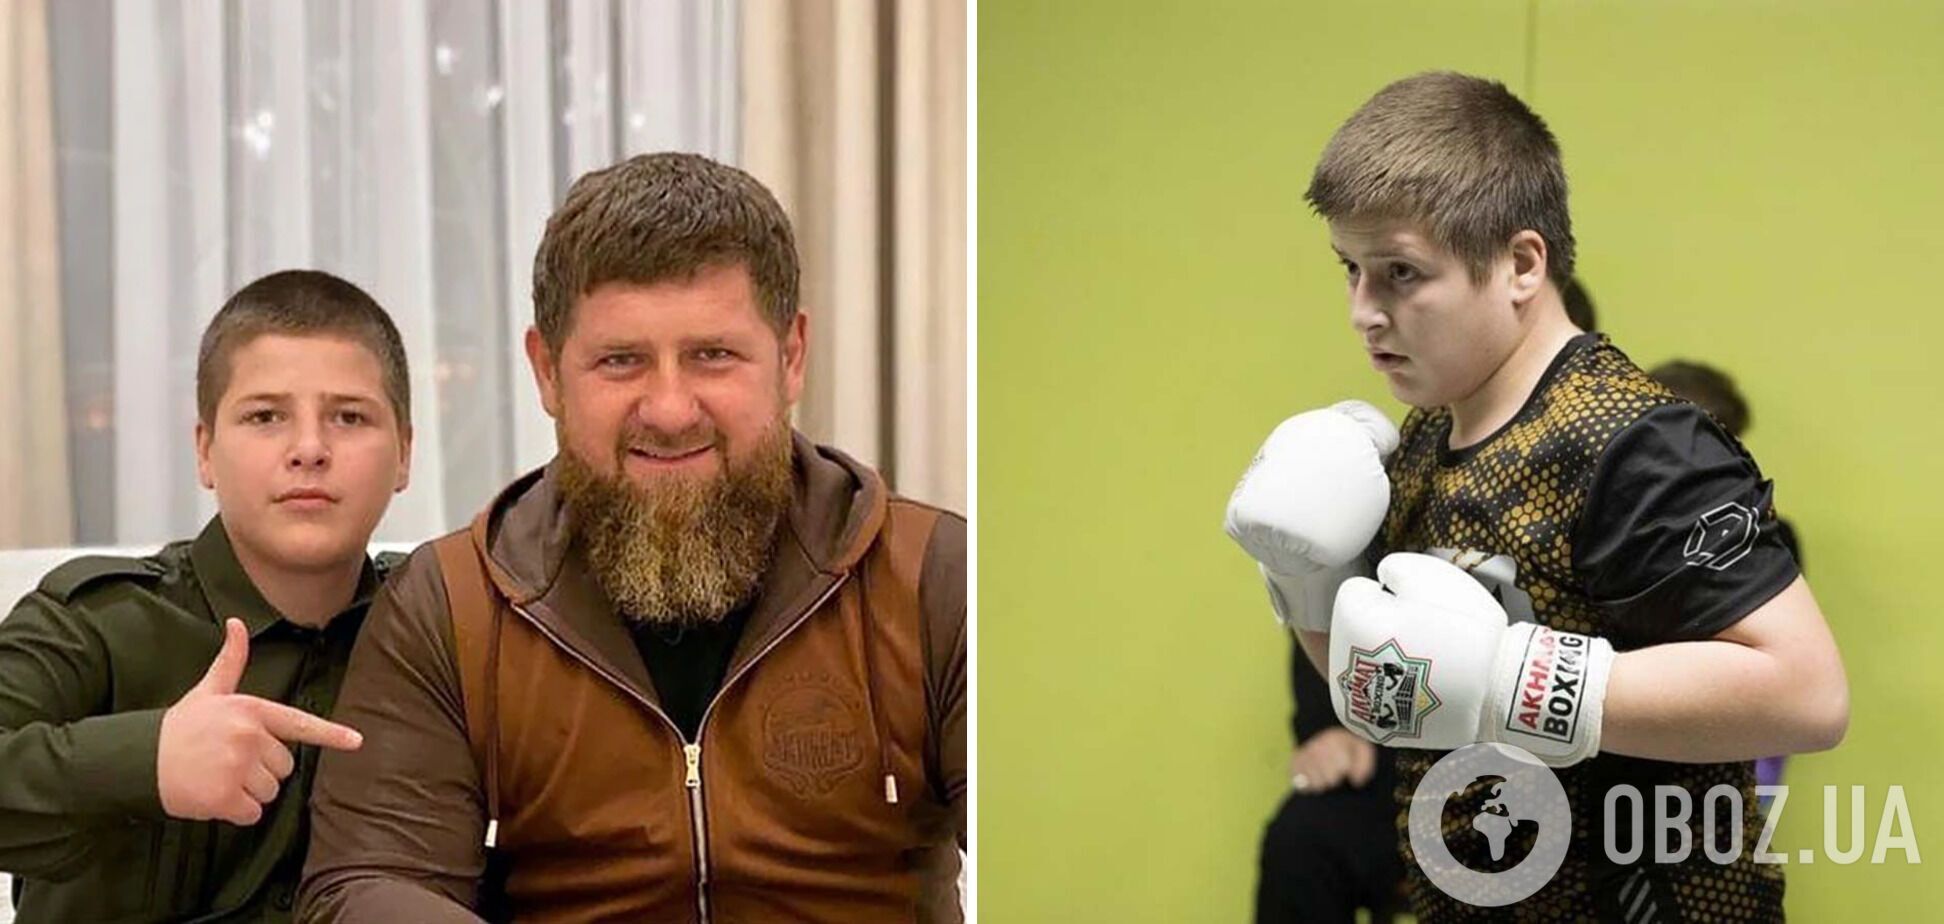 Син "напівживого" Кадирова відзначився новою витівкою після скандалу з побиттям ув’язненого: що це означає і чи може він очолити Чечню